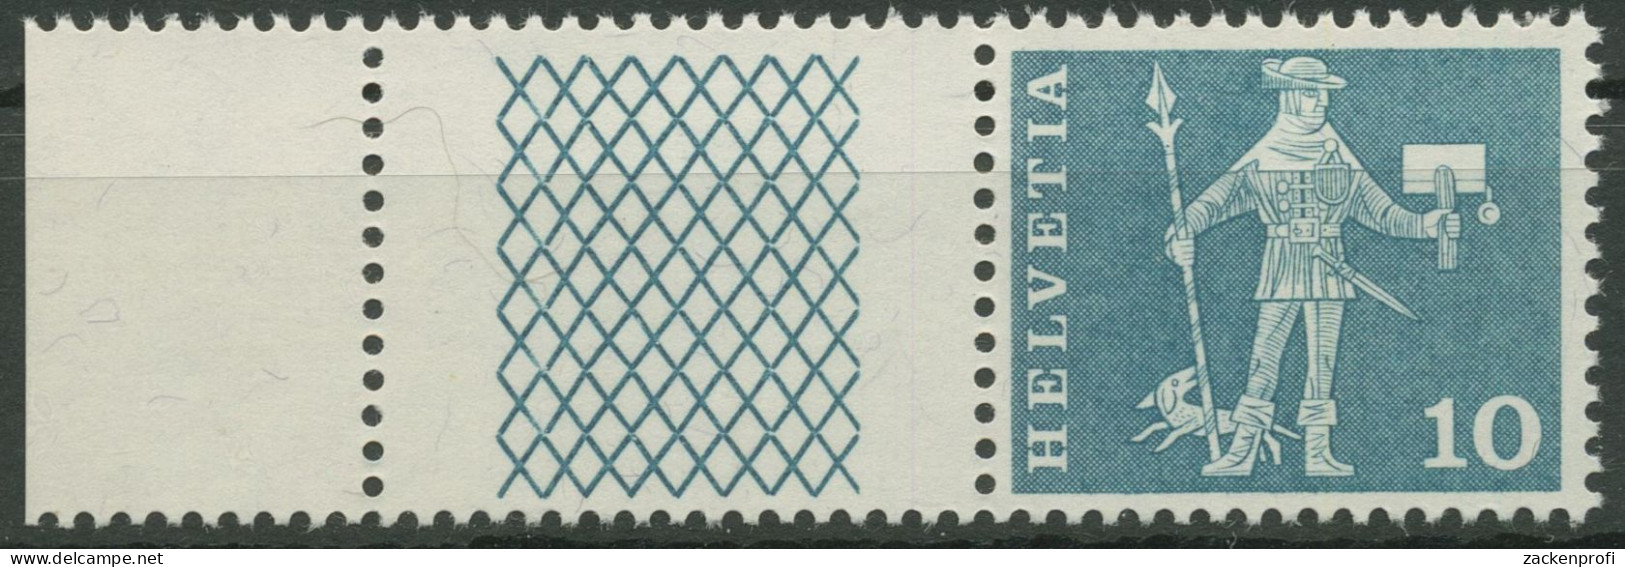 Schweiz 1960 Postmotive Postbote 697 W 26 Postfrisch - Nuovi